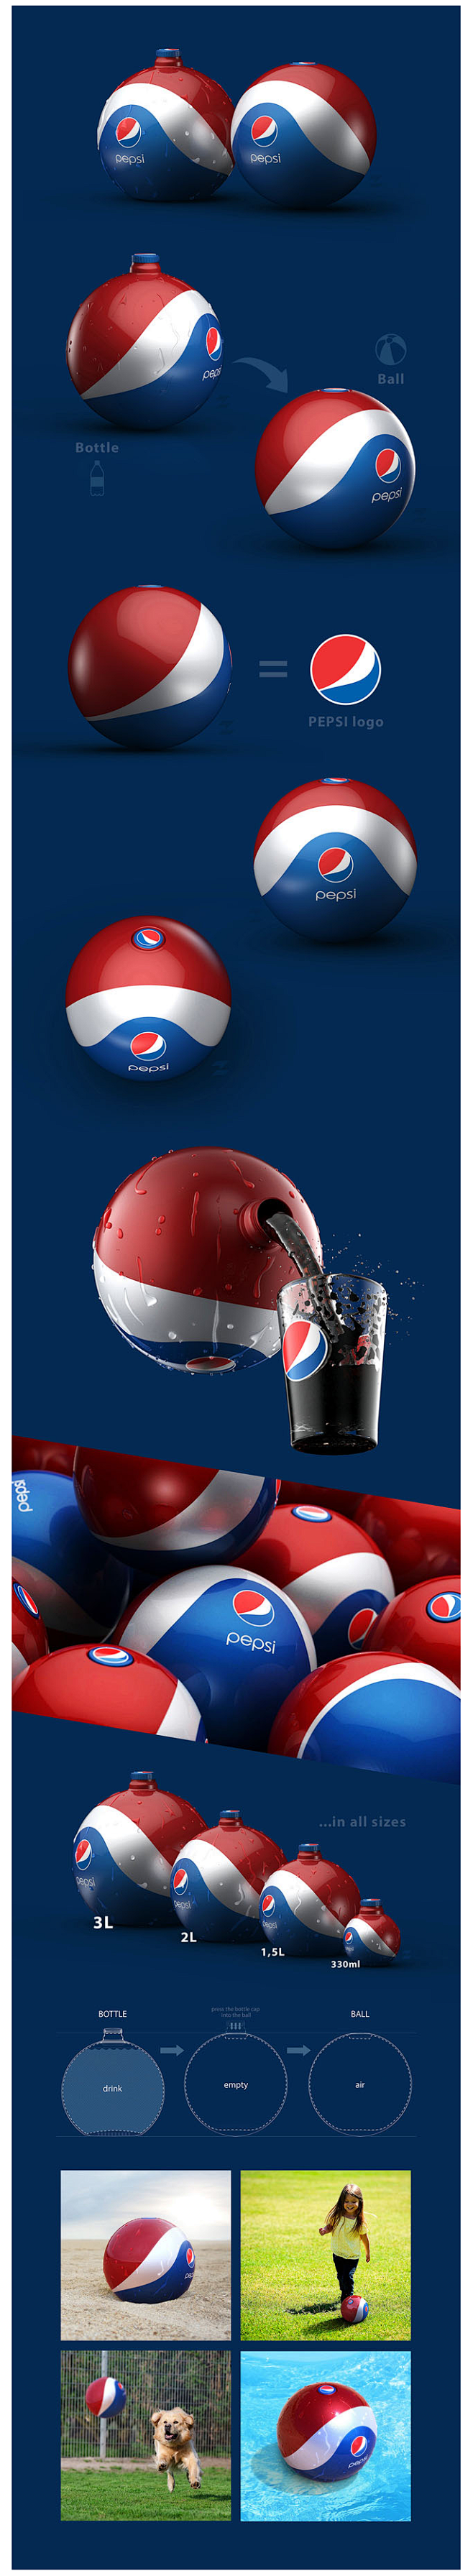 百事可乐橡胶球形概念包装设计